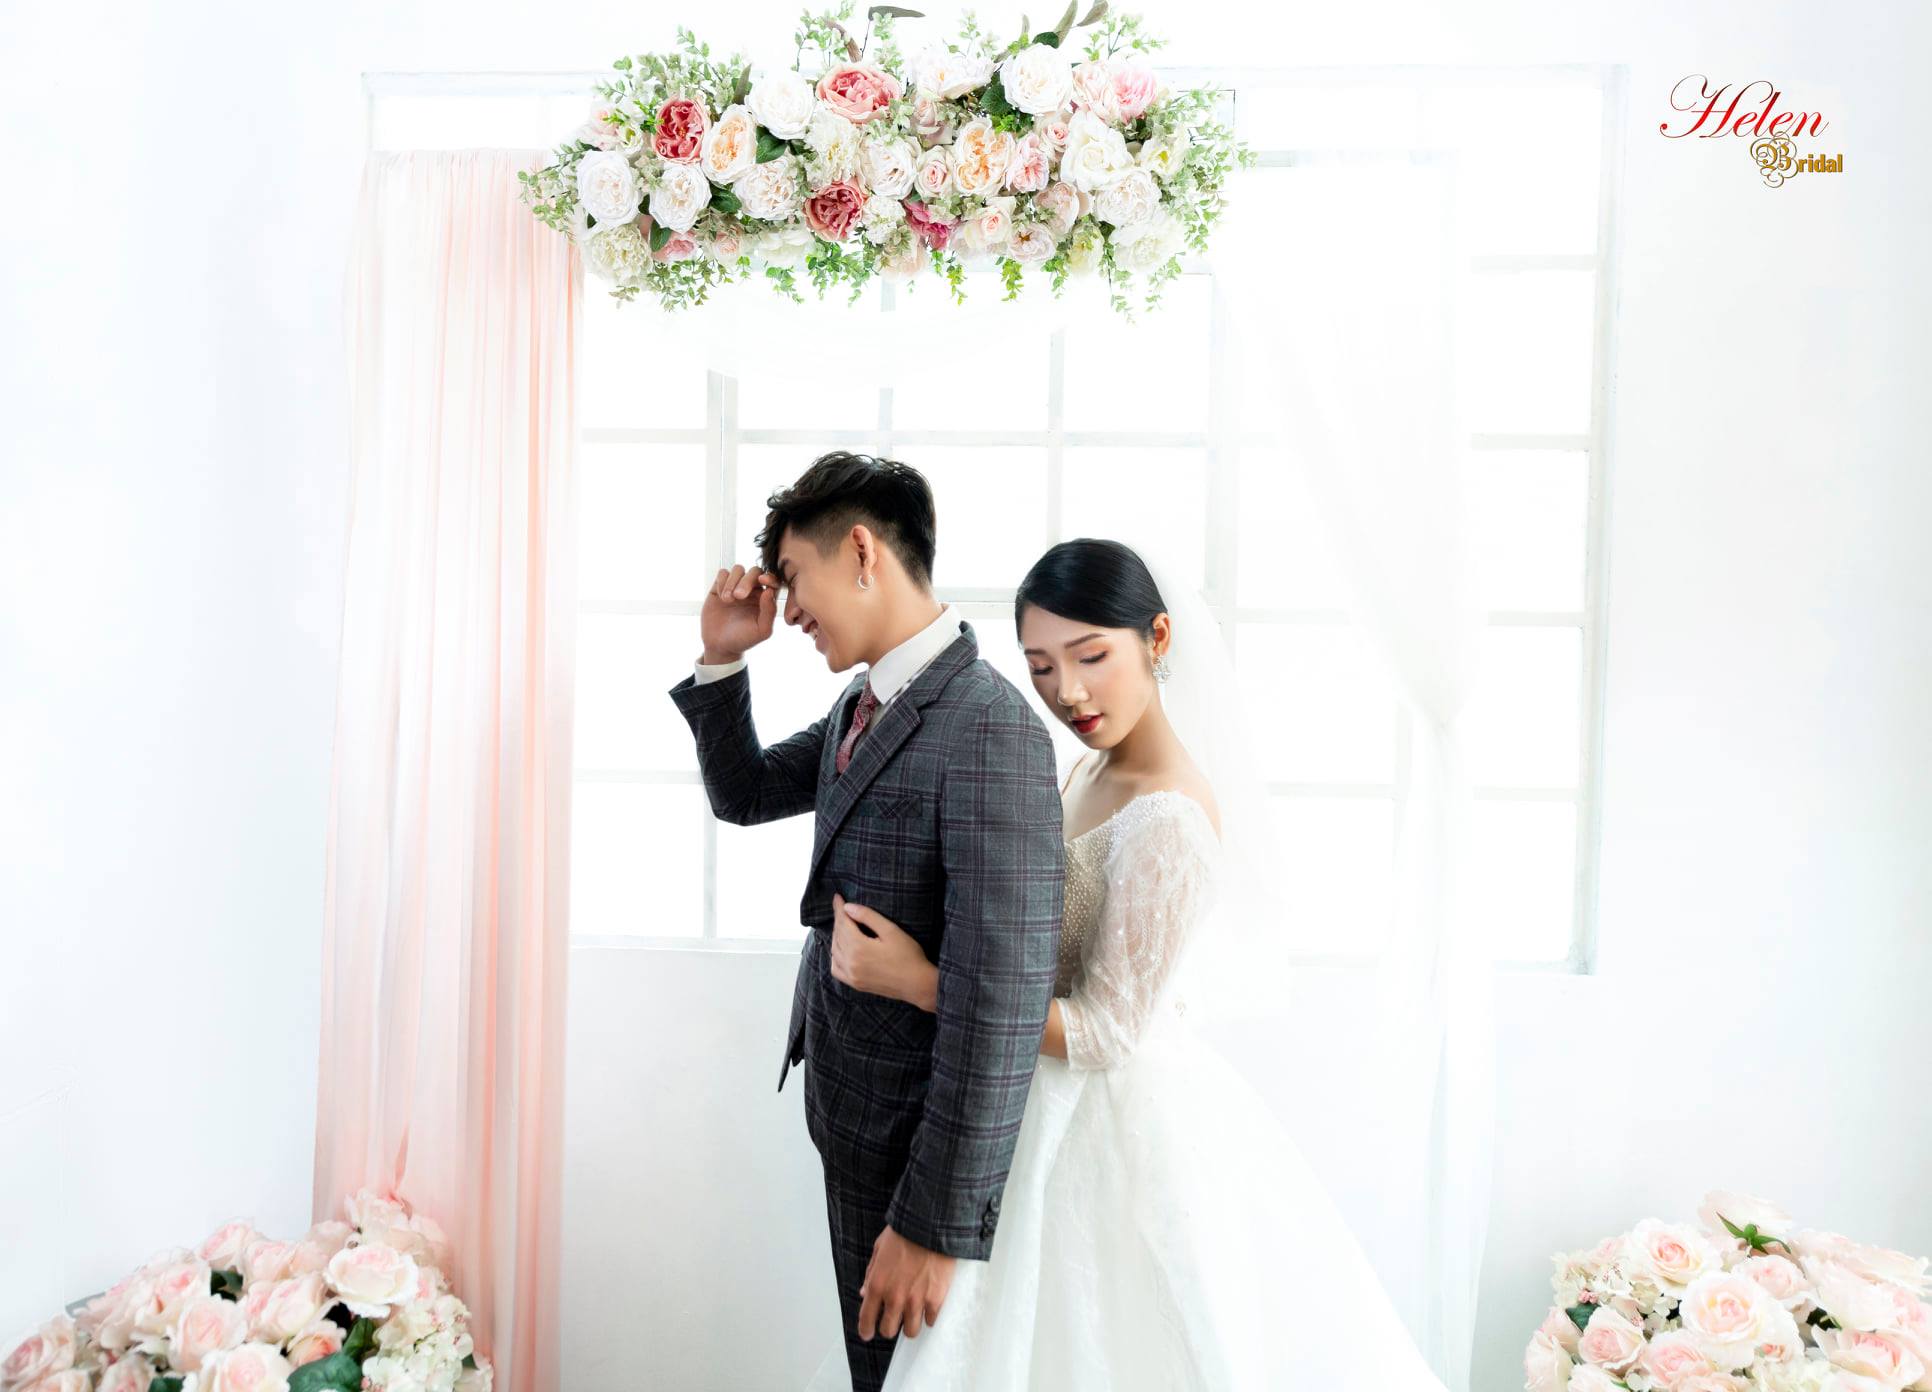 Chụp hình cưới tại studio Hàn Quốc: Chụp ảnh cưới tại studio Hàn Quốc là một trải nghiệm không thể bỏ qua cho các cặp đôi yêu thích nhiếp ảnh và muốn tạo ra những bức ảnh đẹp lung linh. Với không gian chụp đầy màu sắc và ánh sáng tinh tế, studio ở Hàn Quốc sẽ làm cho bộ ảnh của bạn trở nên vô cùng ấn tượng và đặc biệt.